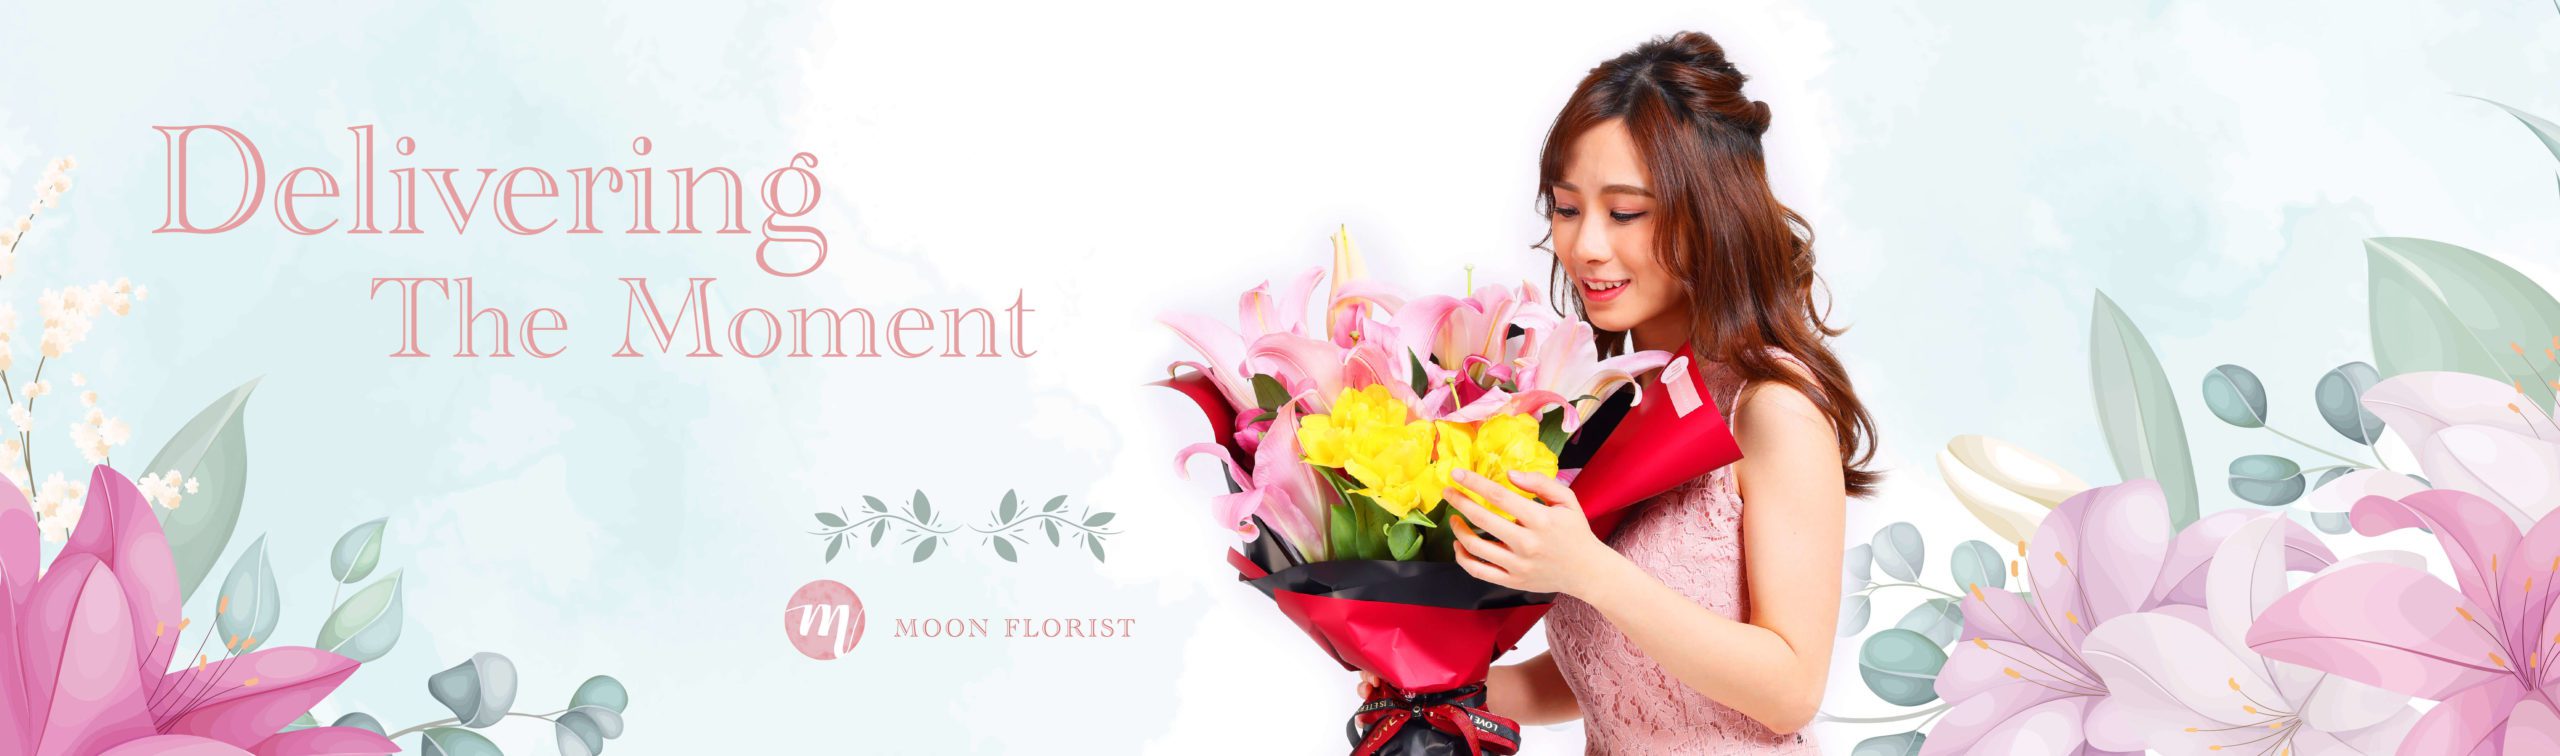 百合花束, 火百合花束, Moon Florist -model banner